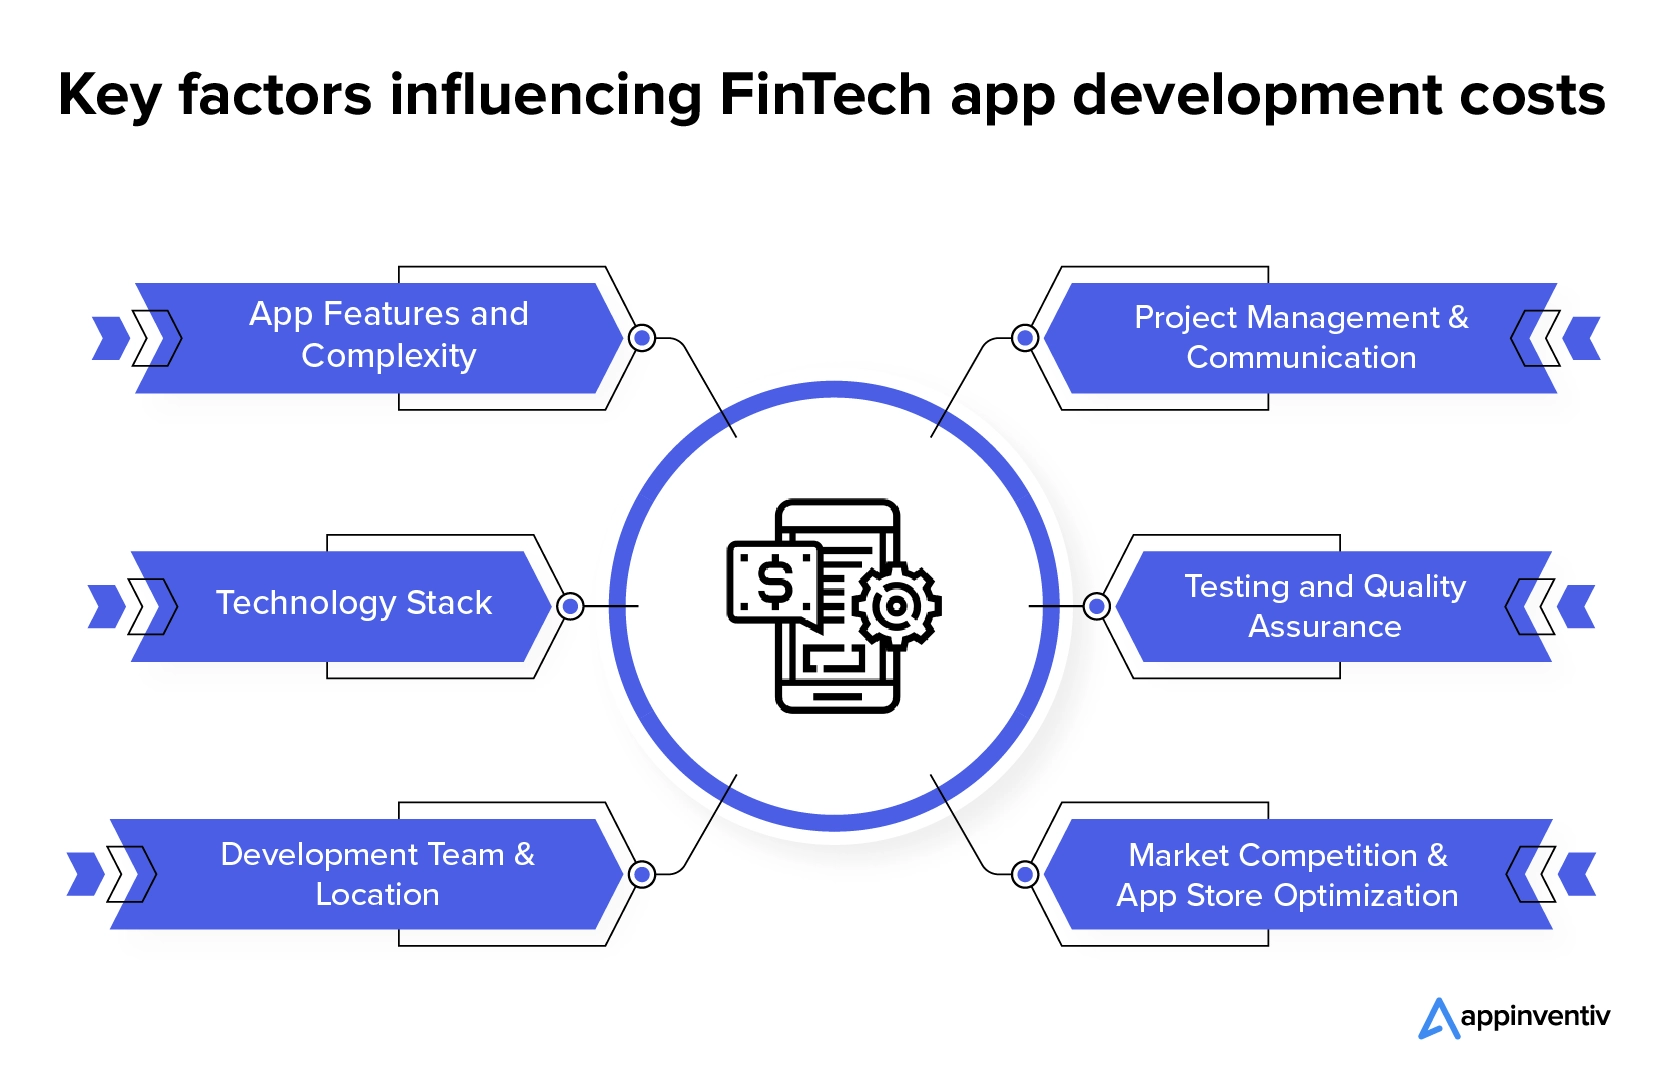 Faktor-faktor utama yang mempengaruhi biaya pengembangan aplikasi FinTech